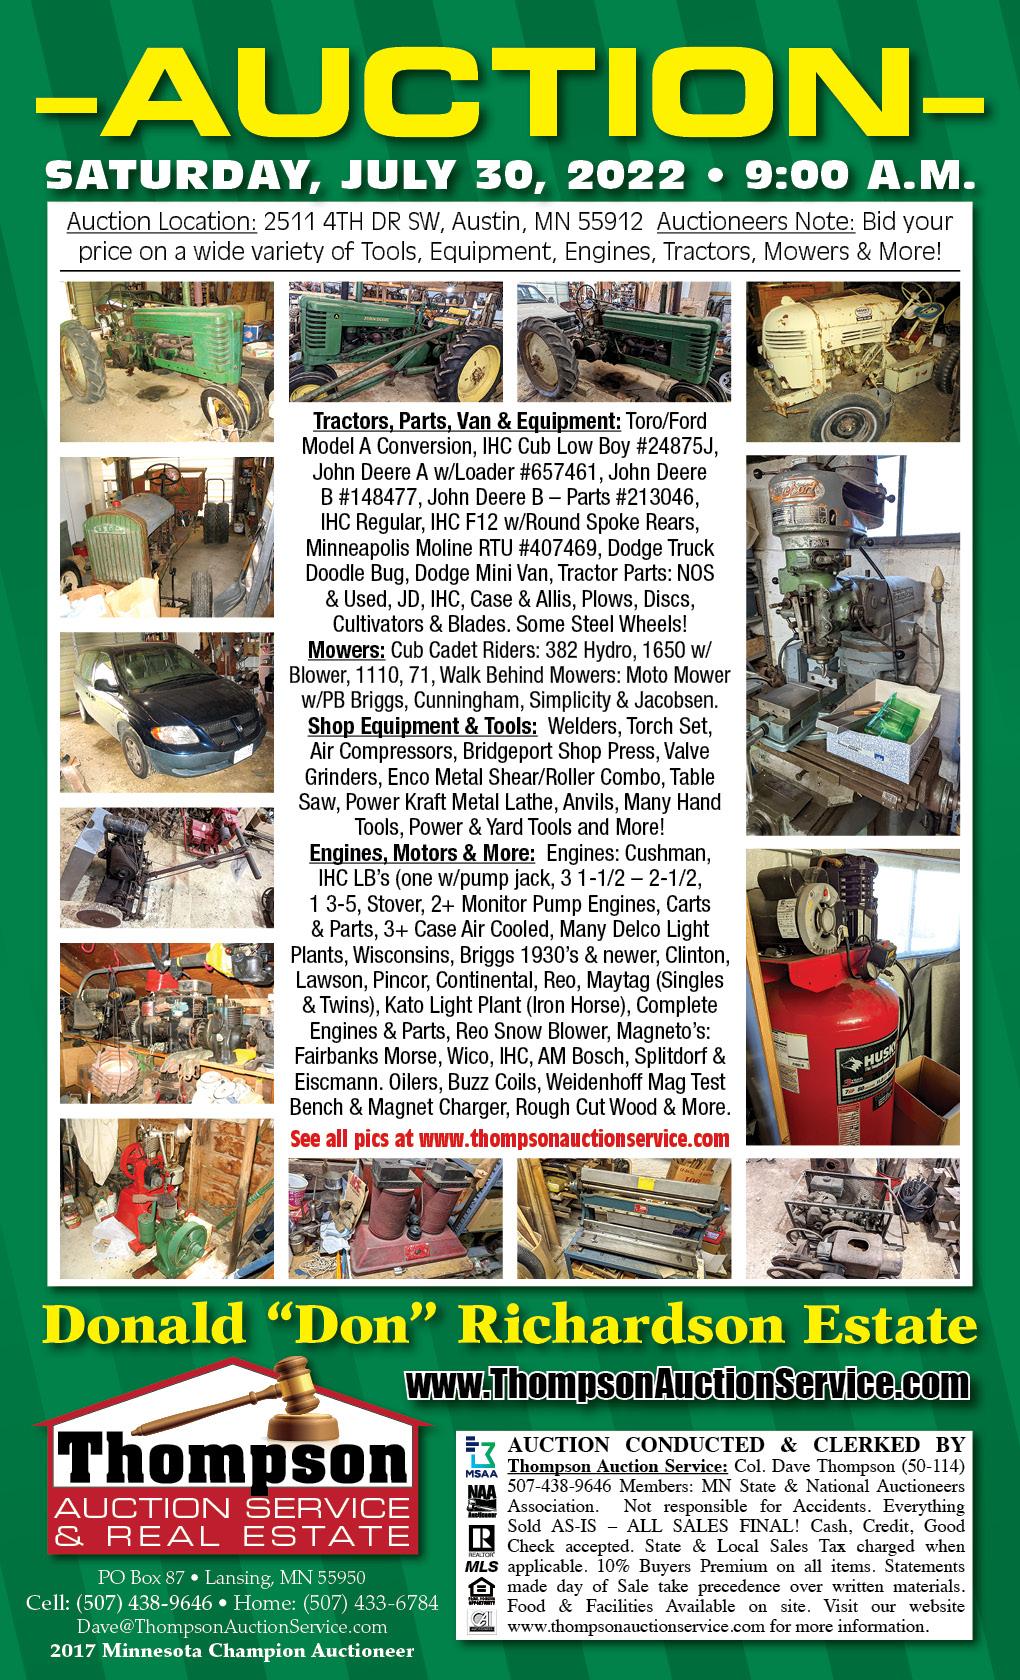 Donald "Don" Richardson Estate Auction